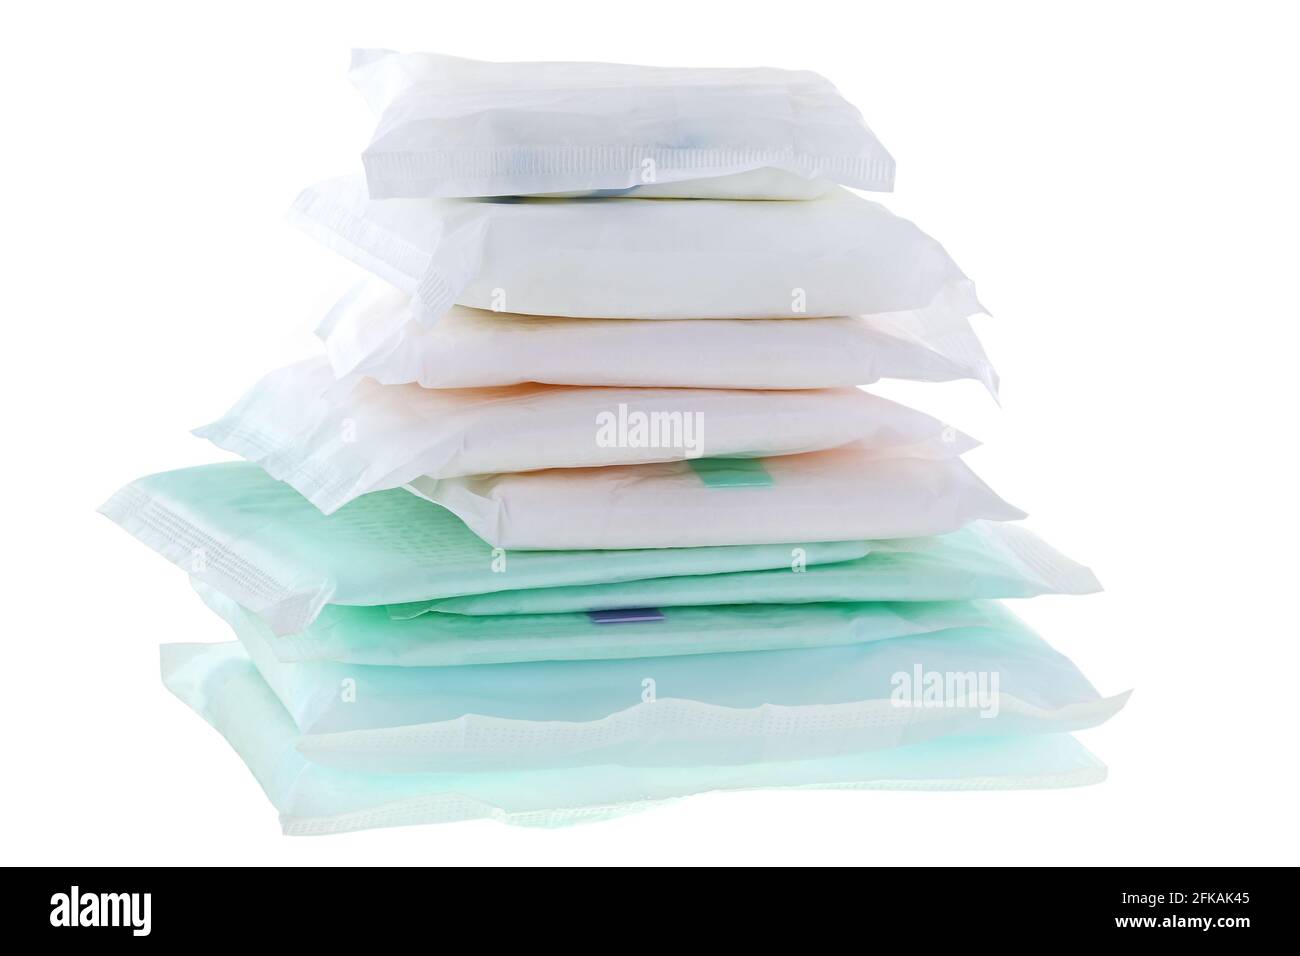 Pile de différents types et tailles de serviettes sanitaires (serviette sanitaire, bloc sanitaire, bloc menstruel) isolées sur blanc Banque D'Images